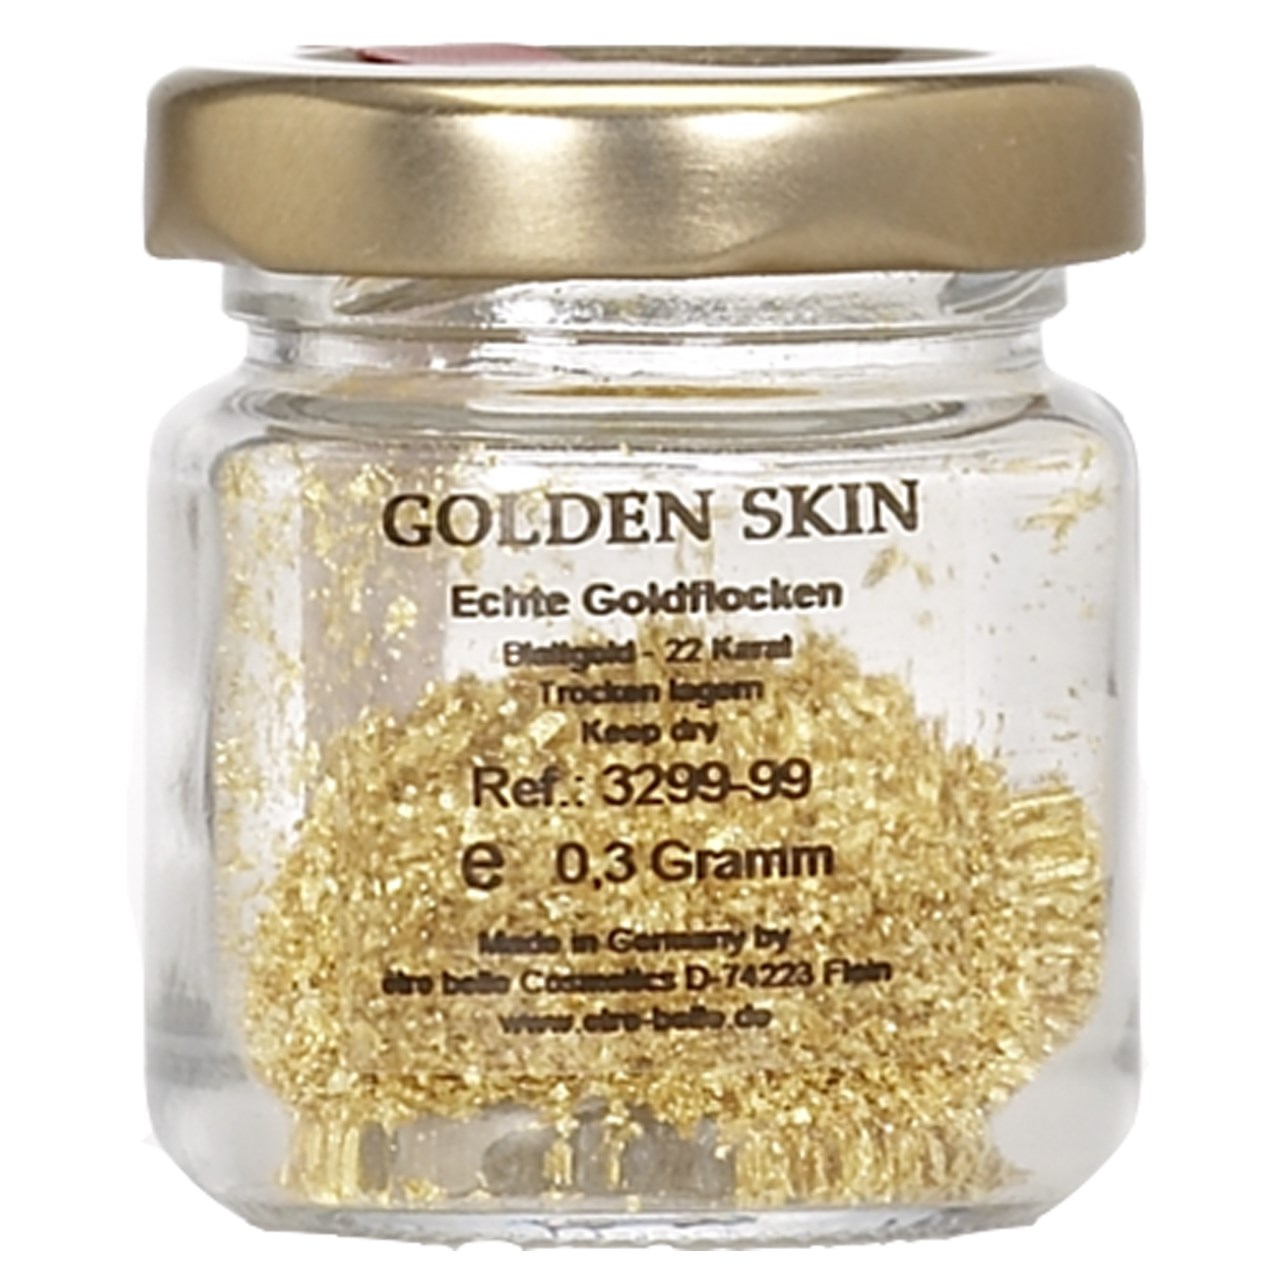 پودر طلا اتق بل سری Golden Skin کد 3299